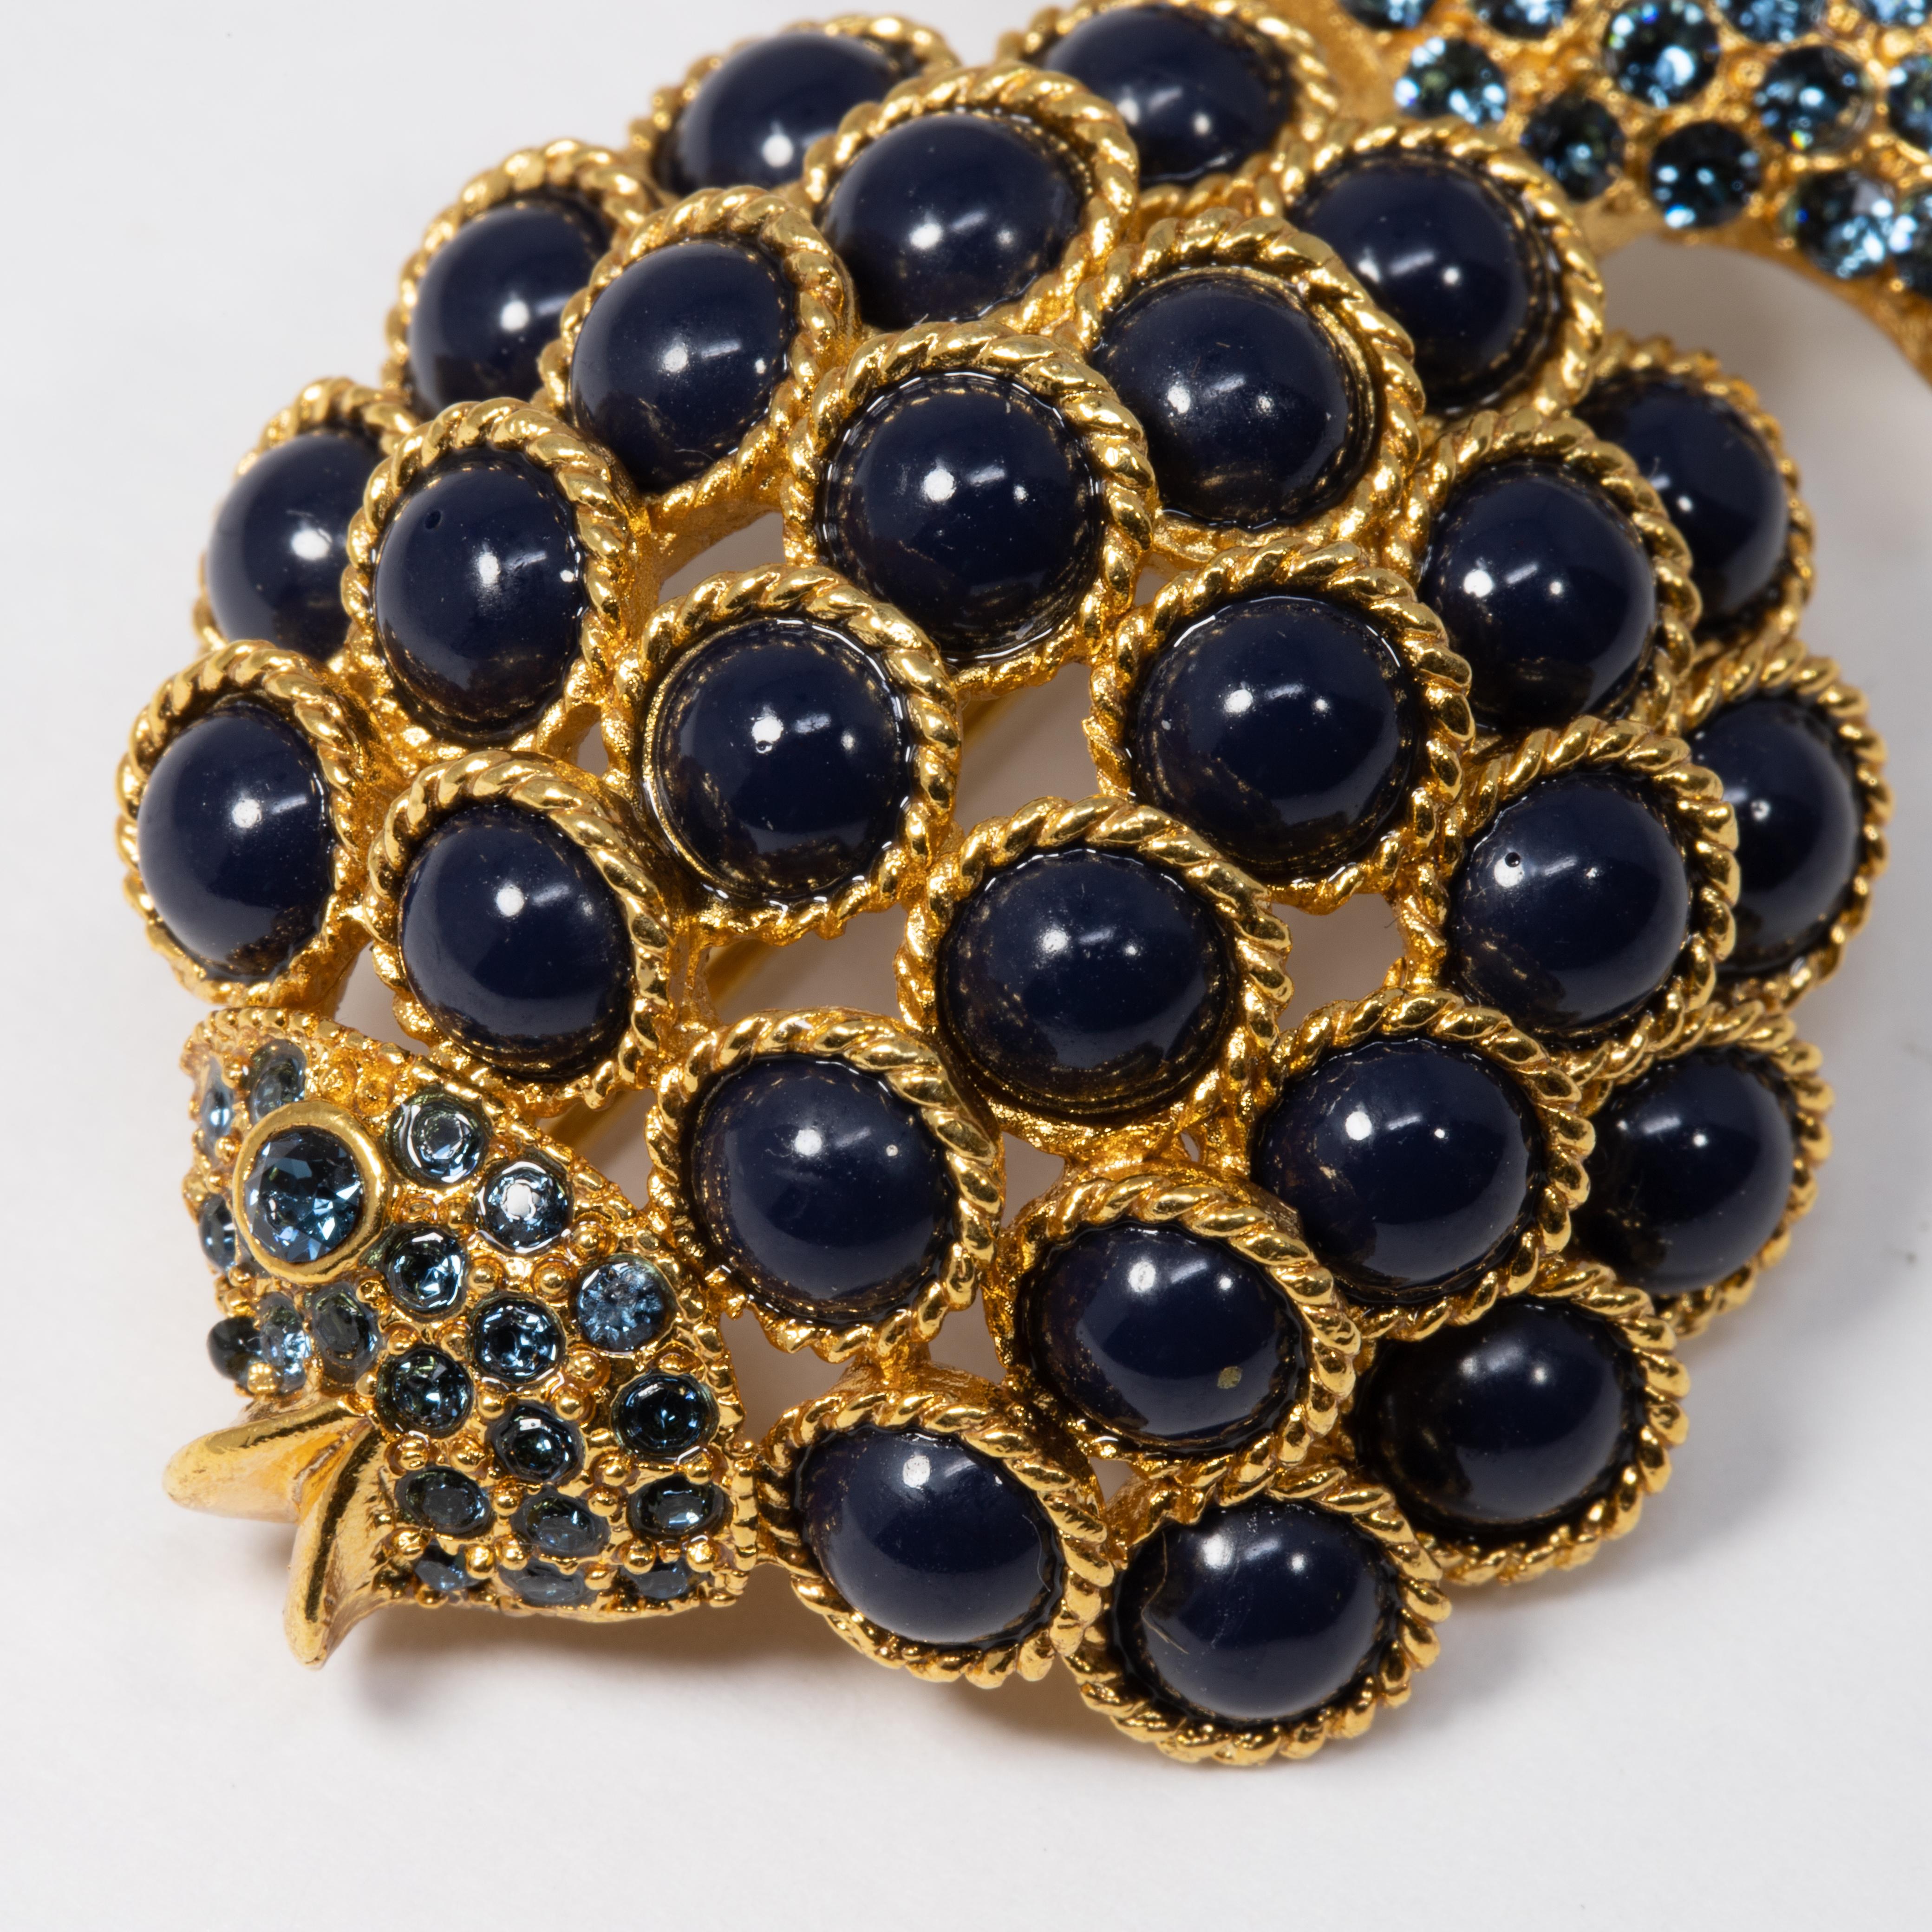 Le poisson en or d'Oscar de la Renta est décoré de cabochons et de cristaux bleu foncé. Ajoutez une touche sophistiquée à votre tenue !

Poinçons : Oscar de la Renta, Made in USA